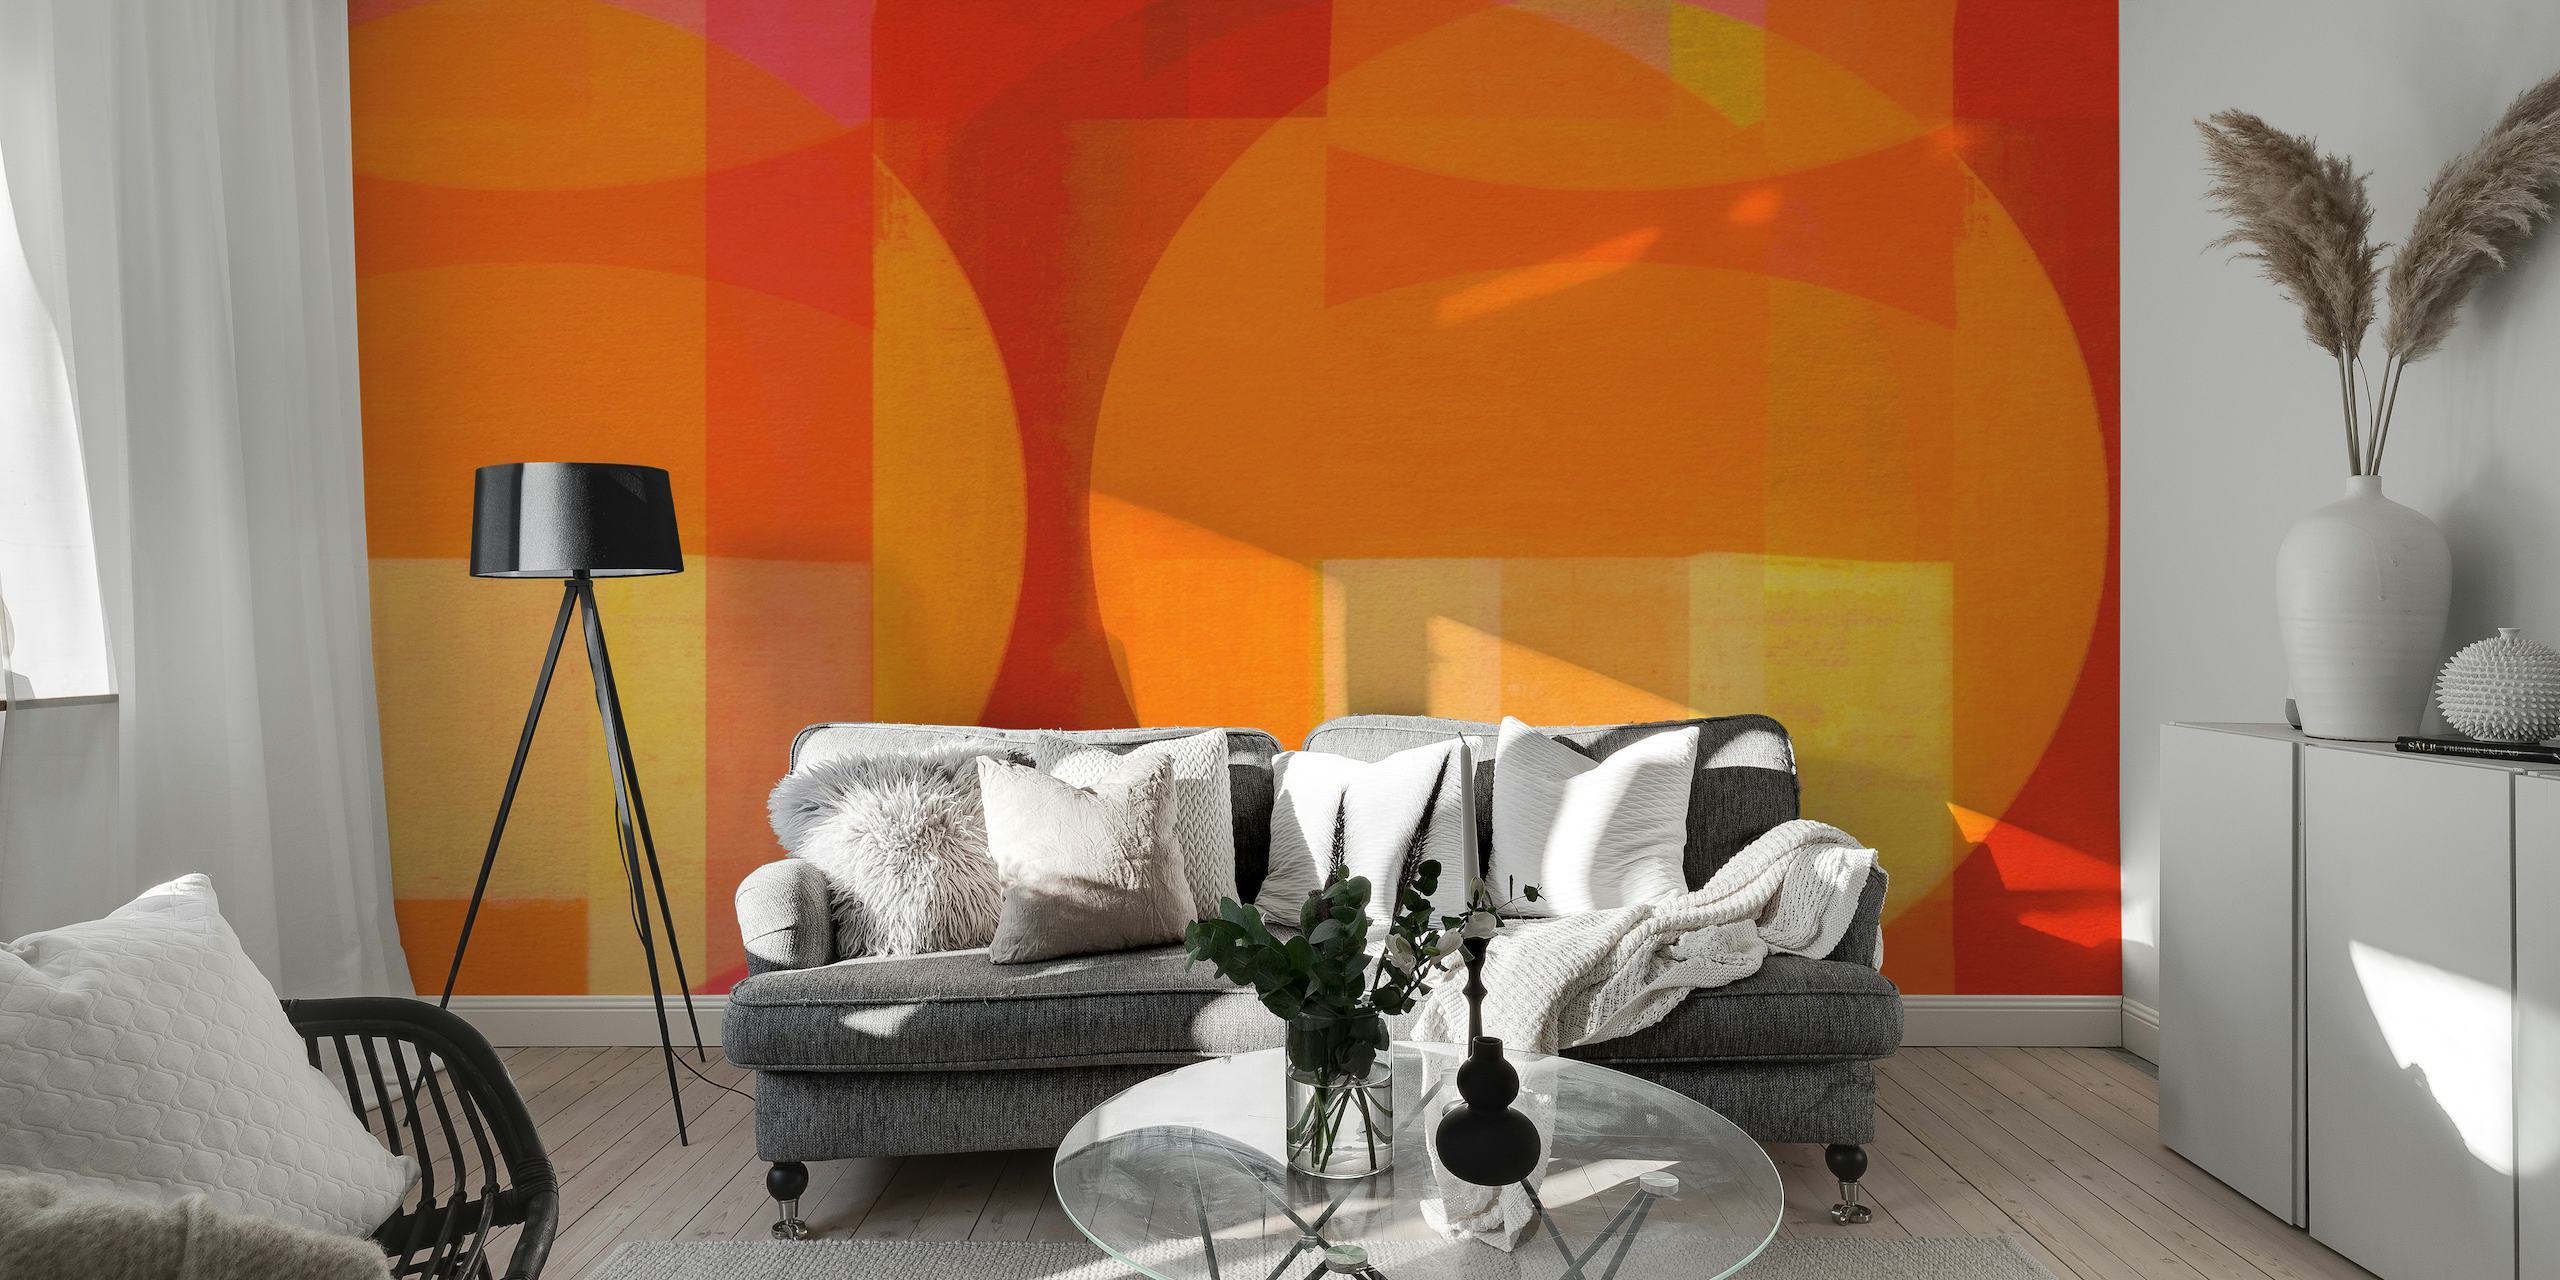 Abstrakt vægmaleri i Bauhaus-stil i en levende blanding af røde, orange og gule geometriske former.